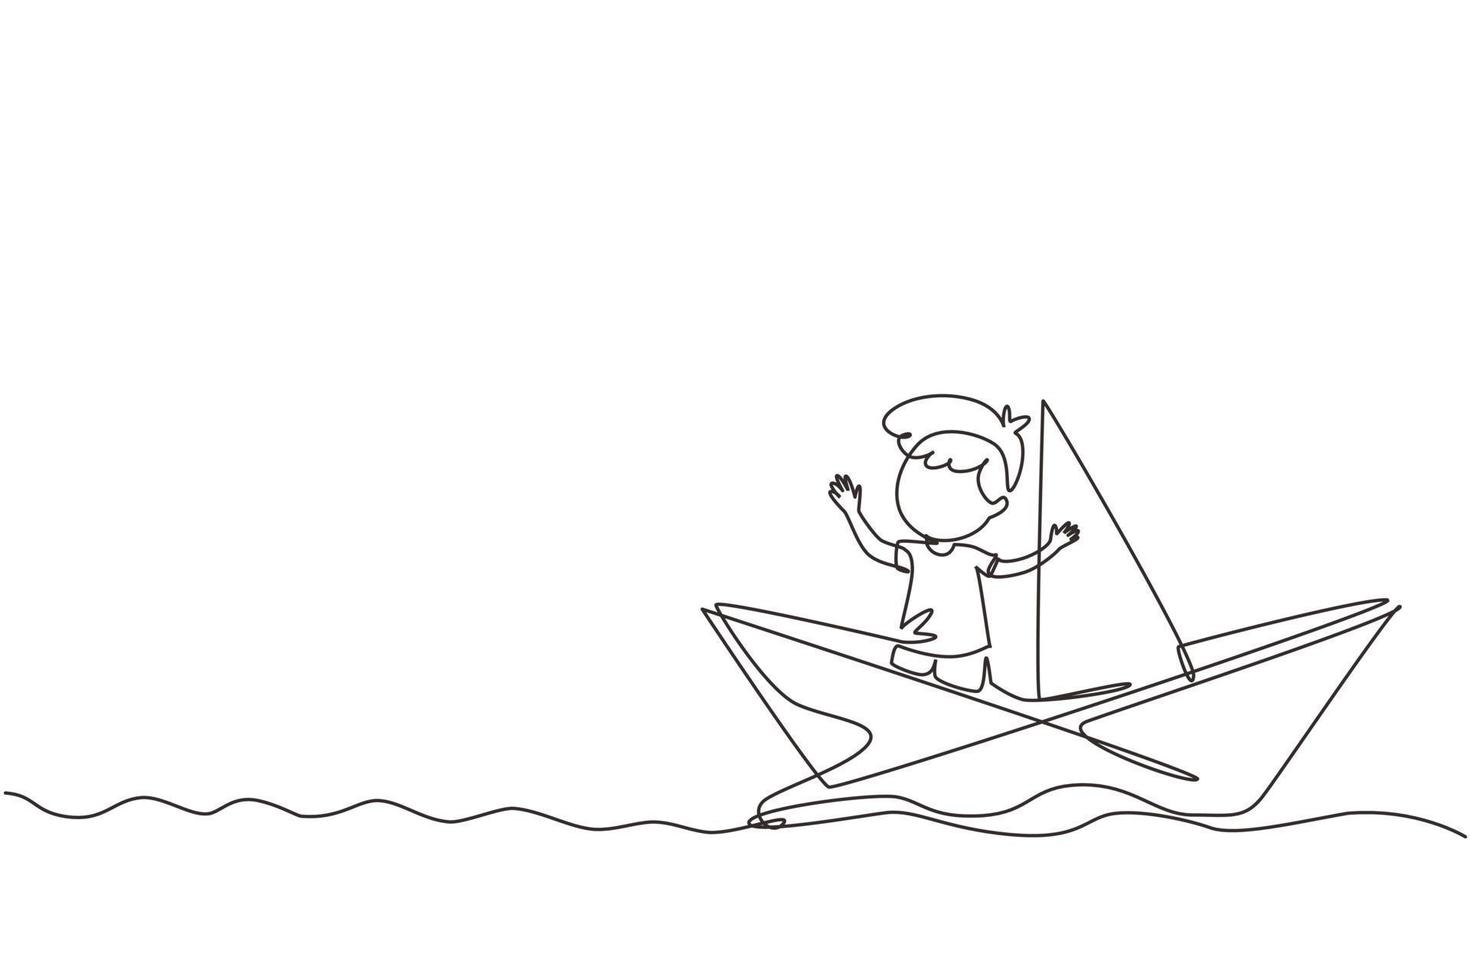 dessin continu d'une ligne mignon petit garçon souriant naviguant sur un bateau en papier. heureux enfant souriant s'amusant et jouant au marin dans un monde imaginaire. illustration graphique vectorielle de conception de dessin à une seule ligne vecteur